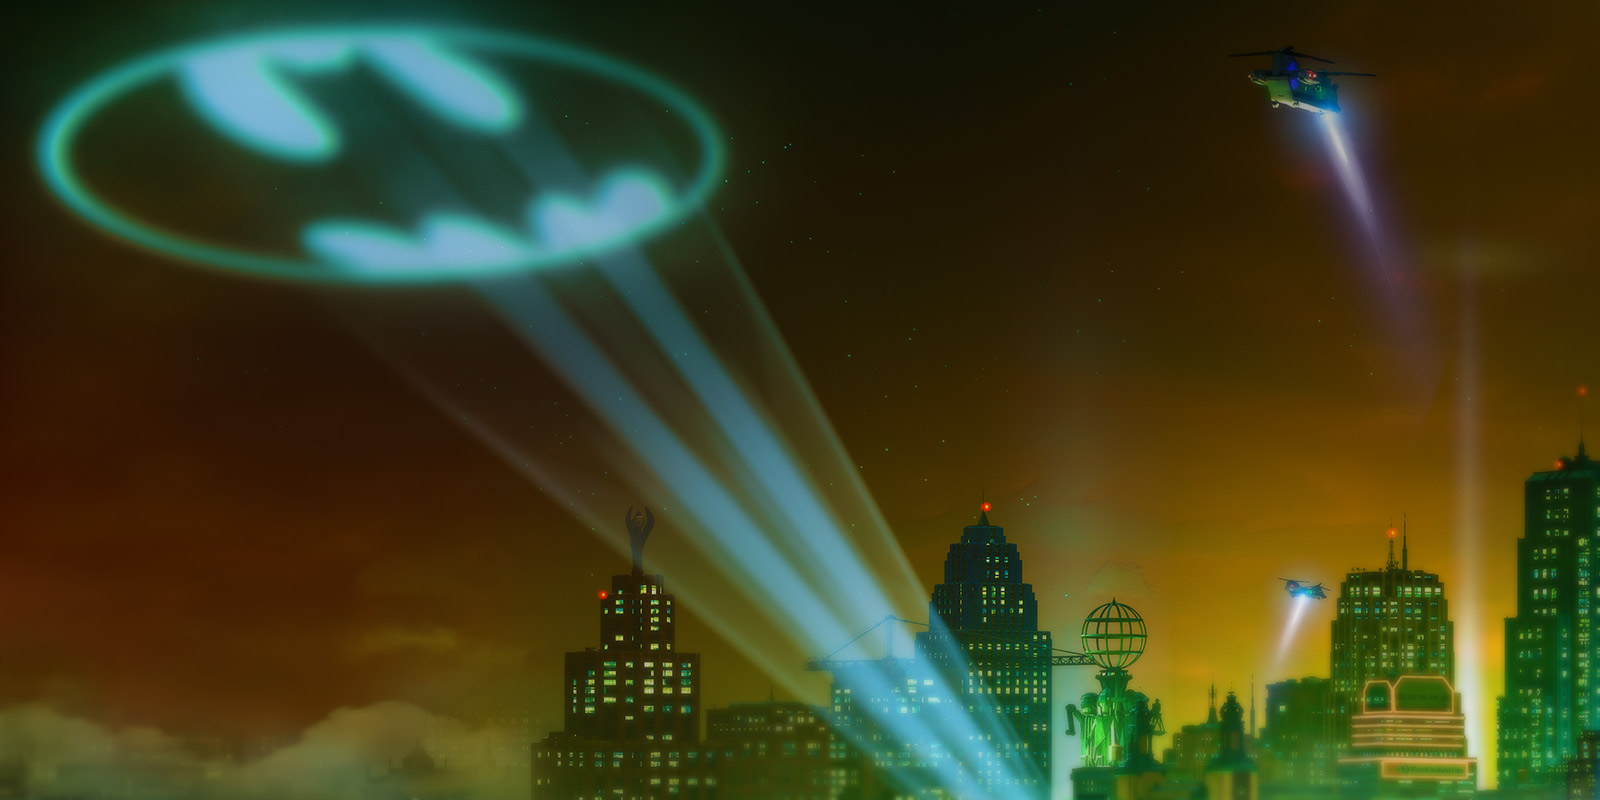 gotham-city-the-lego-batman-movie-wikia-fandom-powered-by-wikia